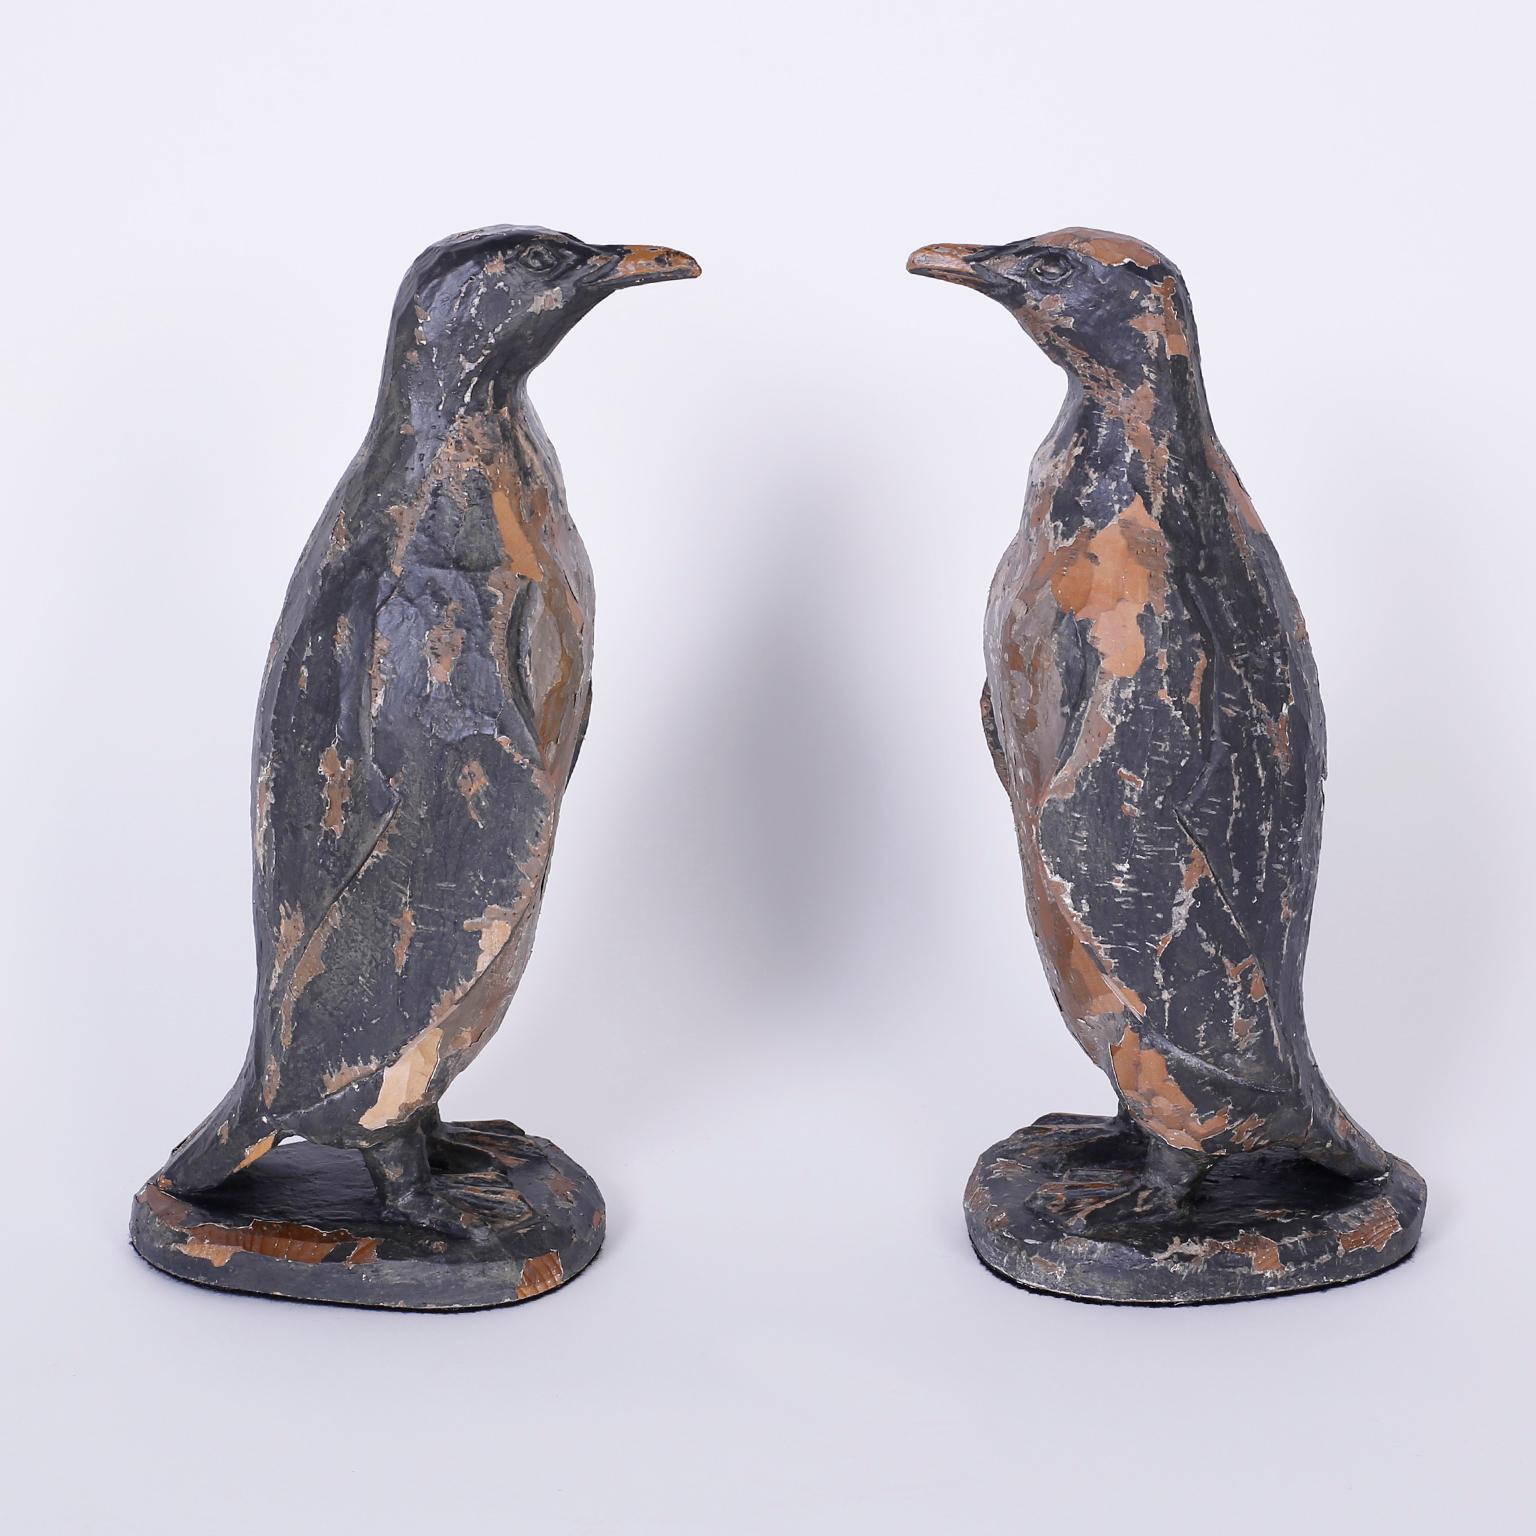 carved wooden penguins